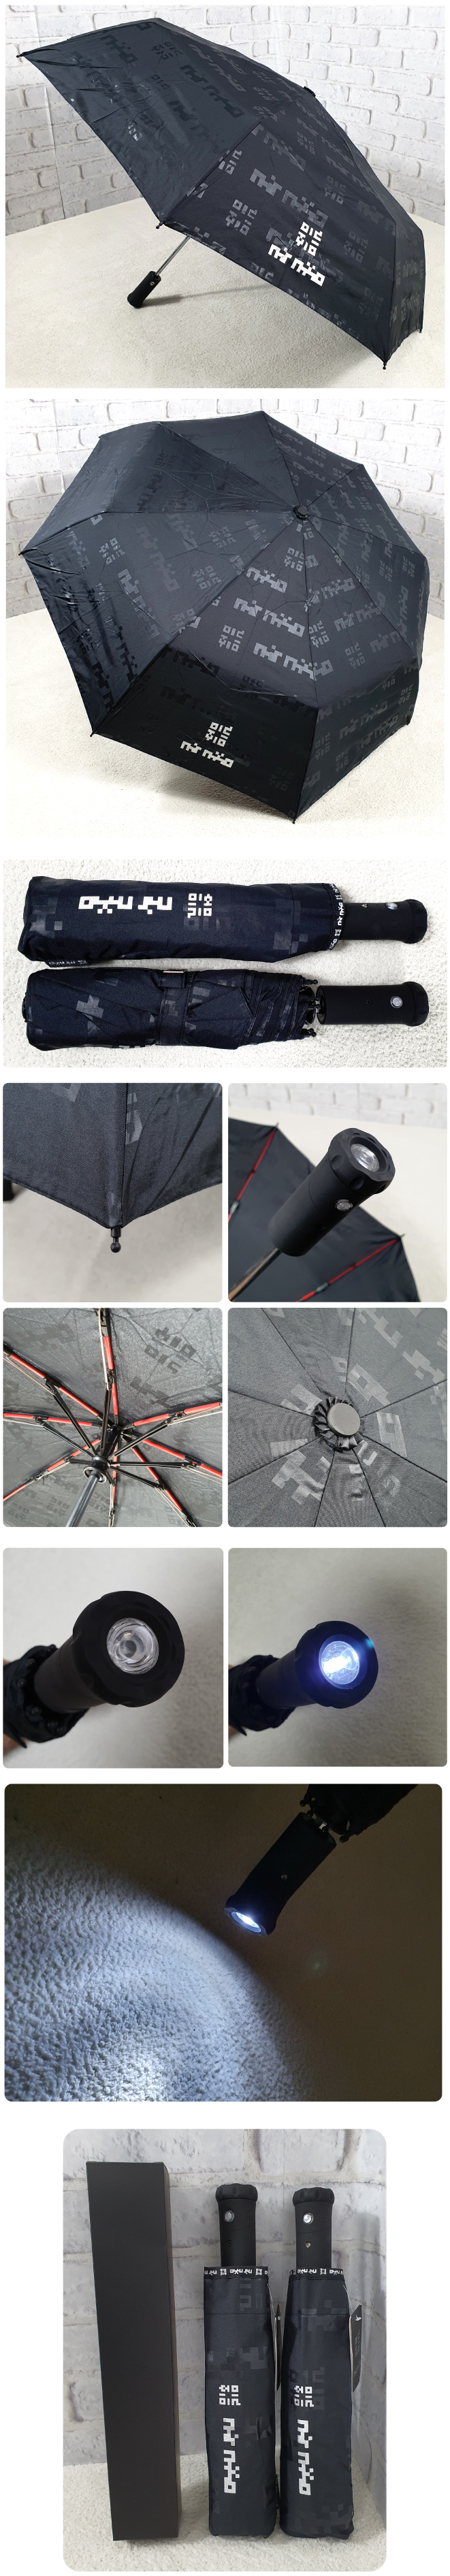 3단전자동 랜턴 우산